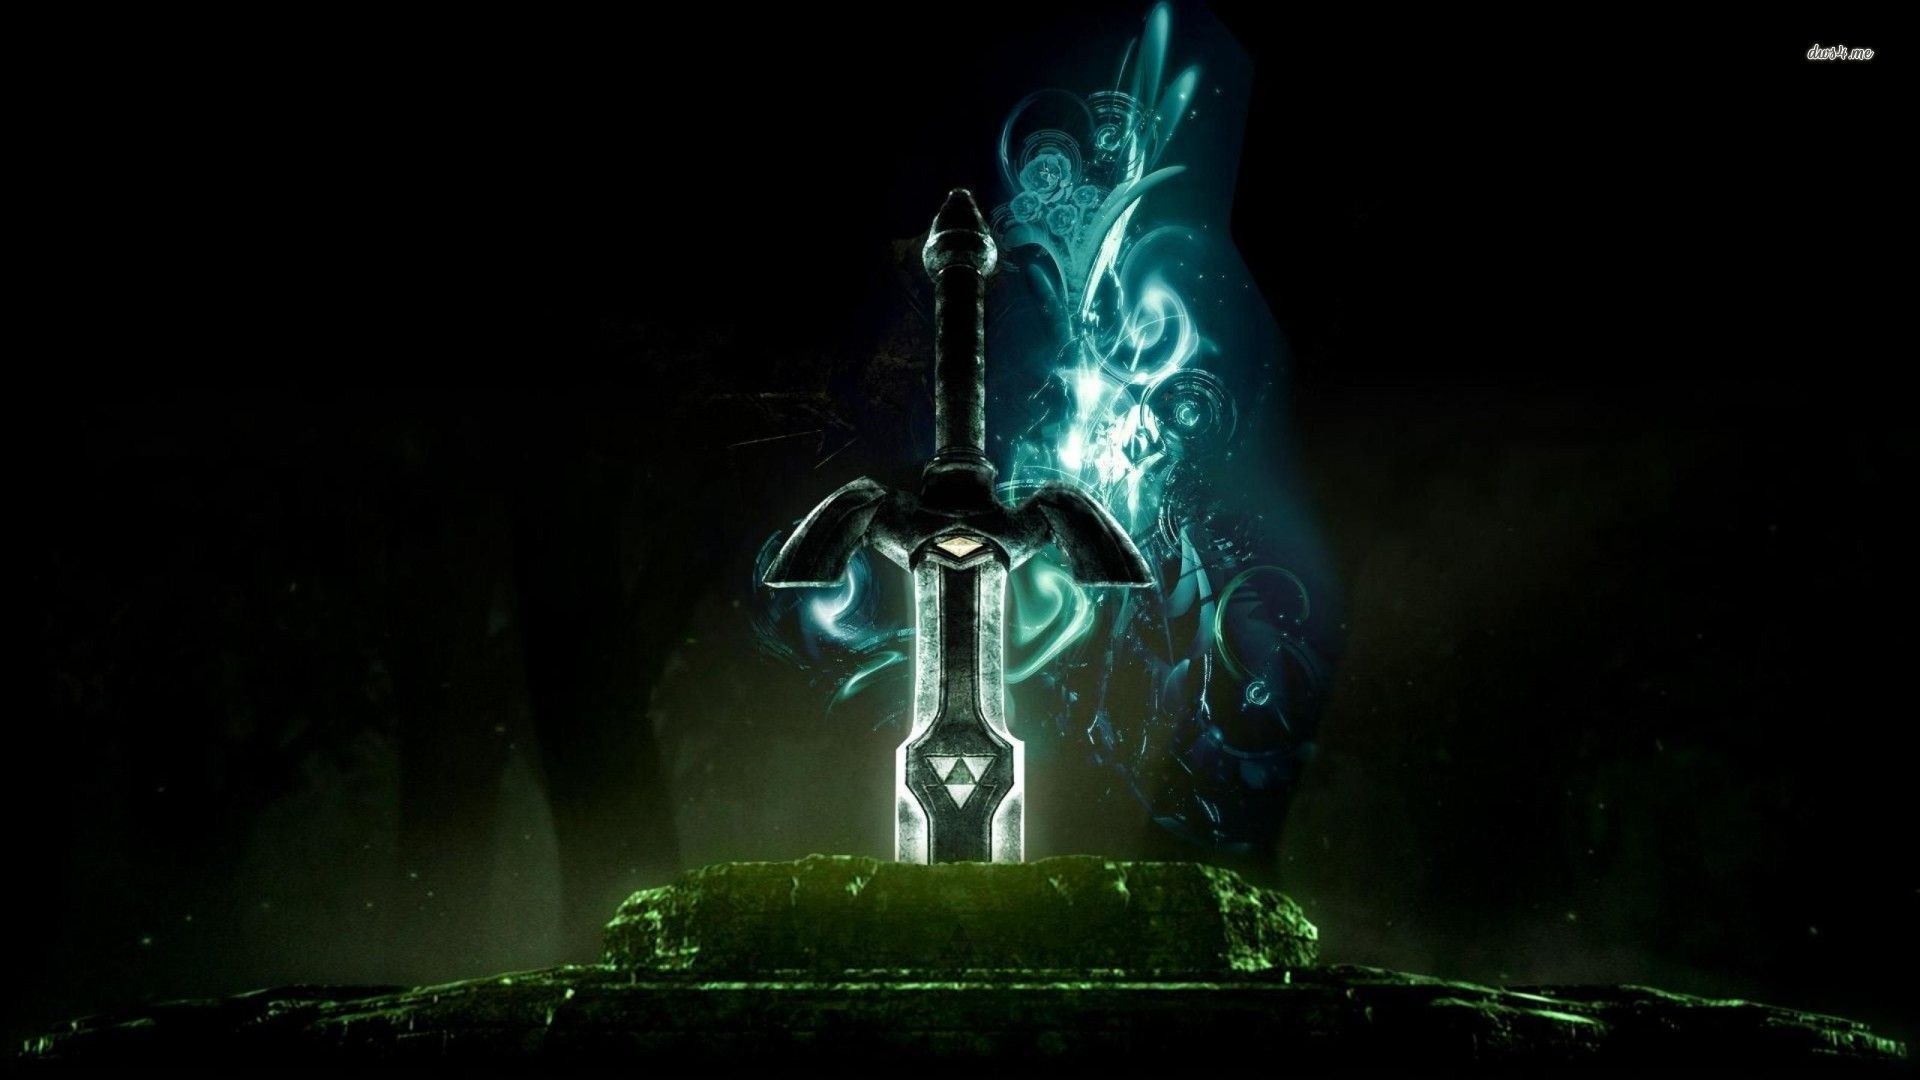 The Legend of Zelda sword wallpaper - Game wallpapers - #20094